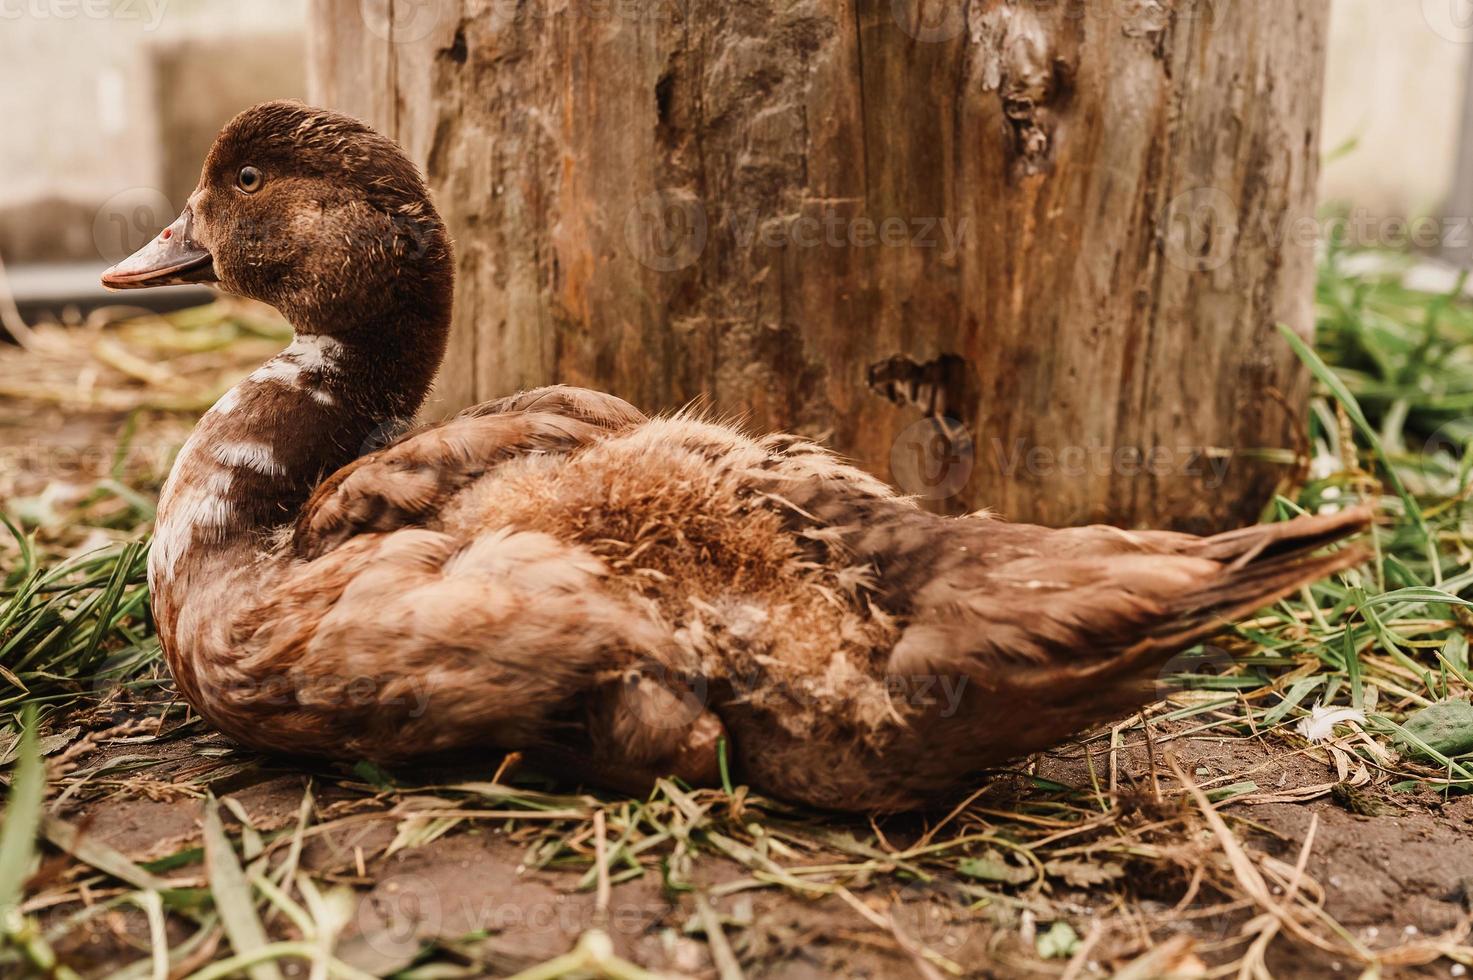 almíscar ou pato indo em uma fazenda em um galinheiro foto